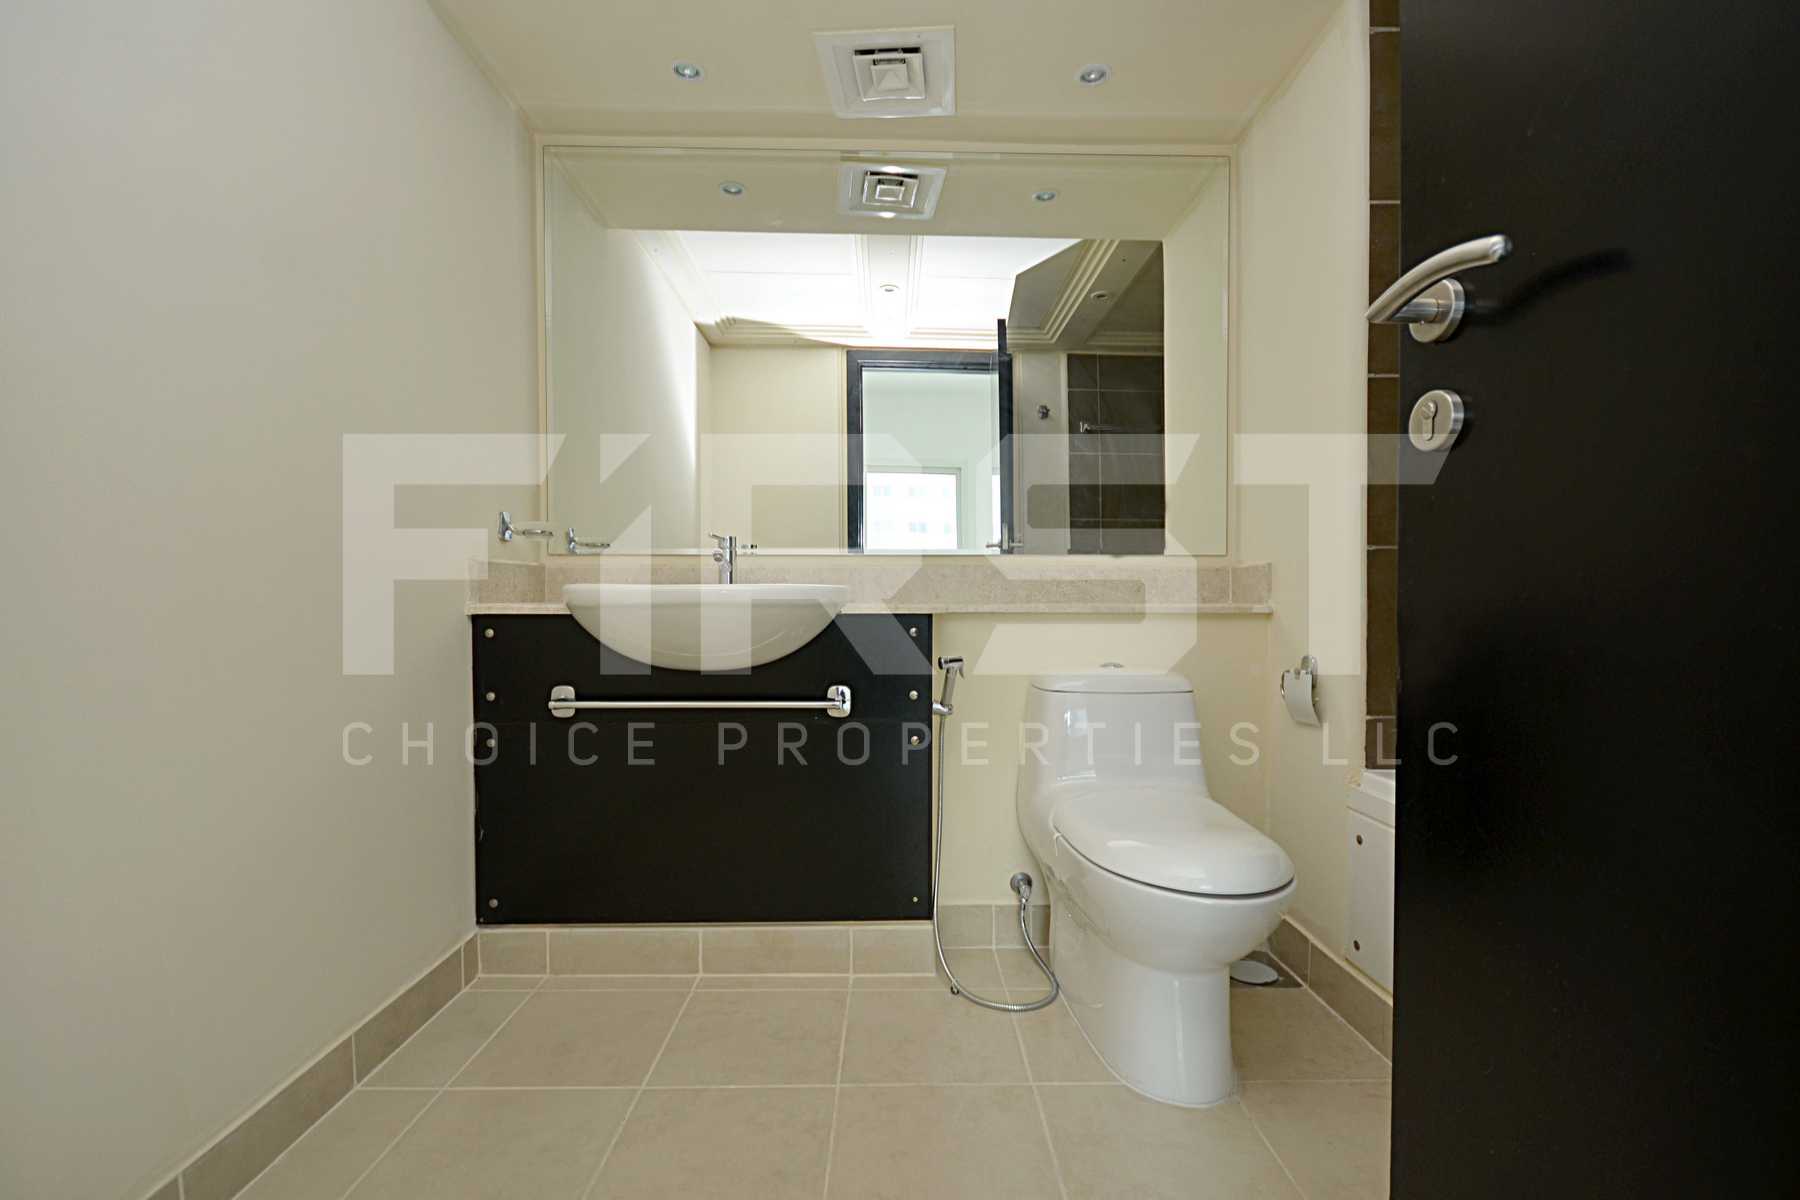 Internal Photo of 4 Bedroom Villa in Al Reef Villas Al Reef Abu Dhabi UAE 265.5 sq.m 2858 sq.ft (27).jpg